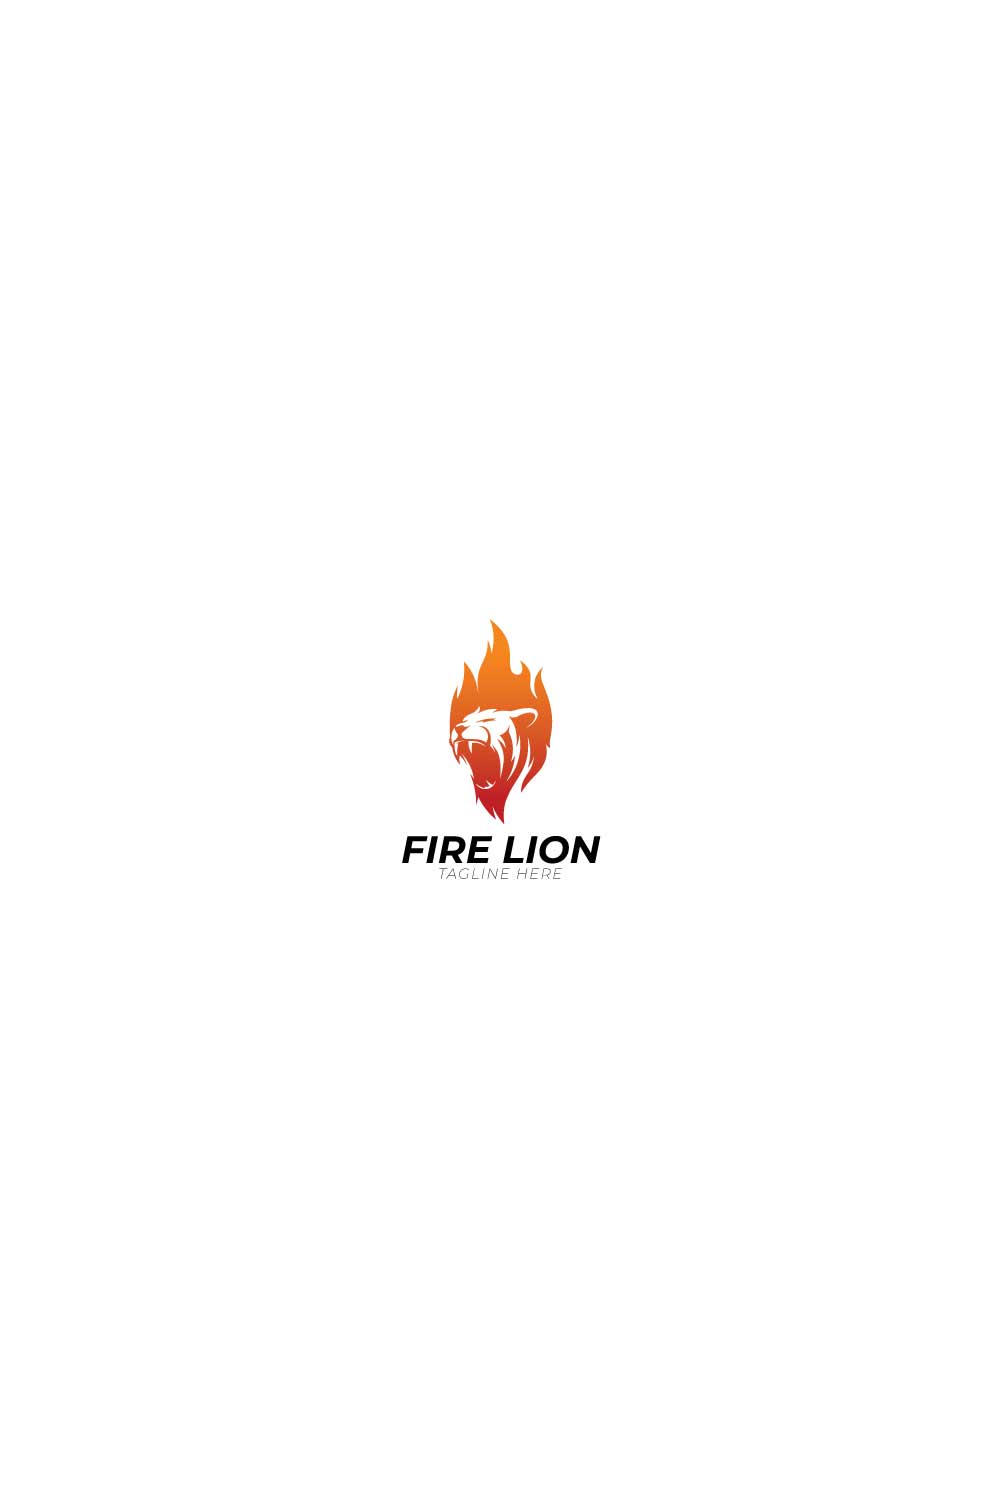 fire lion vector pint 699